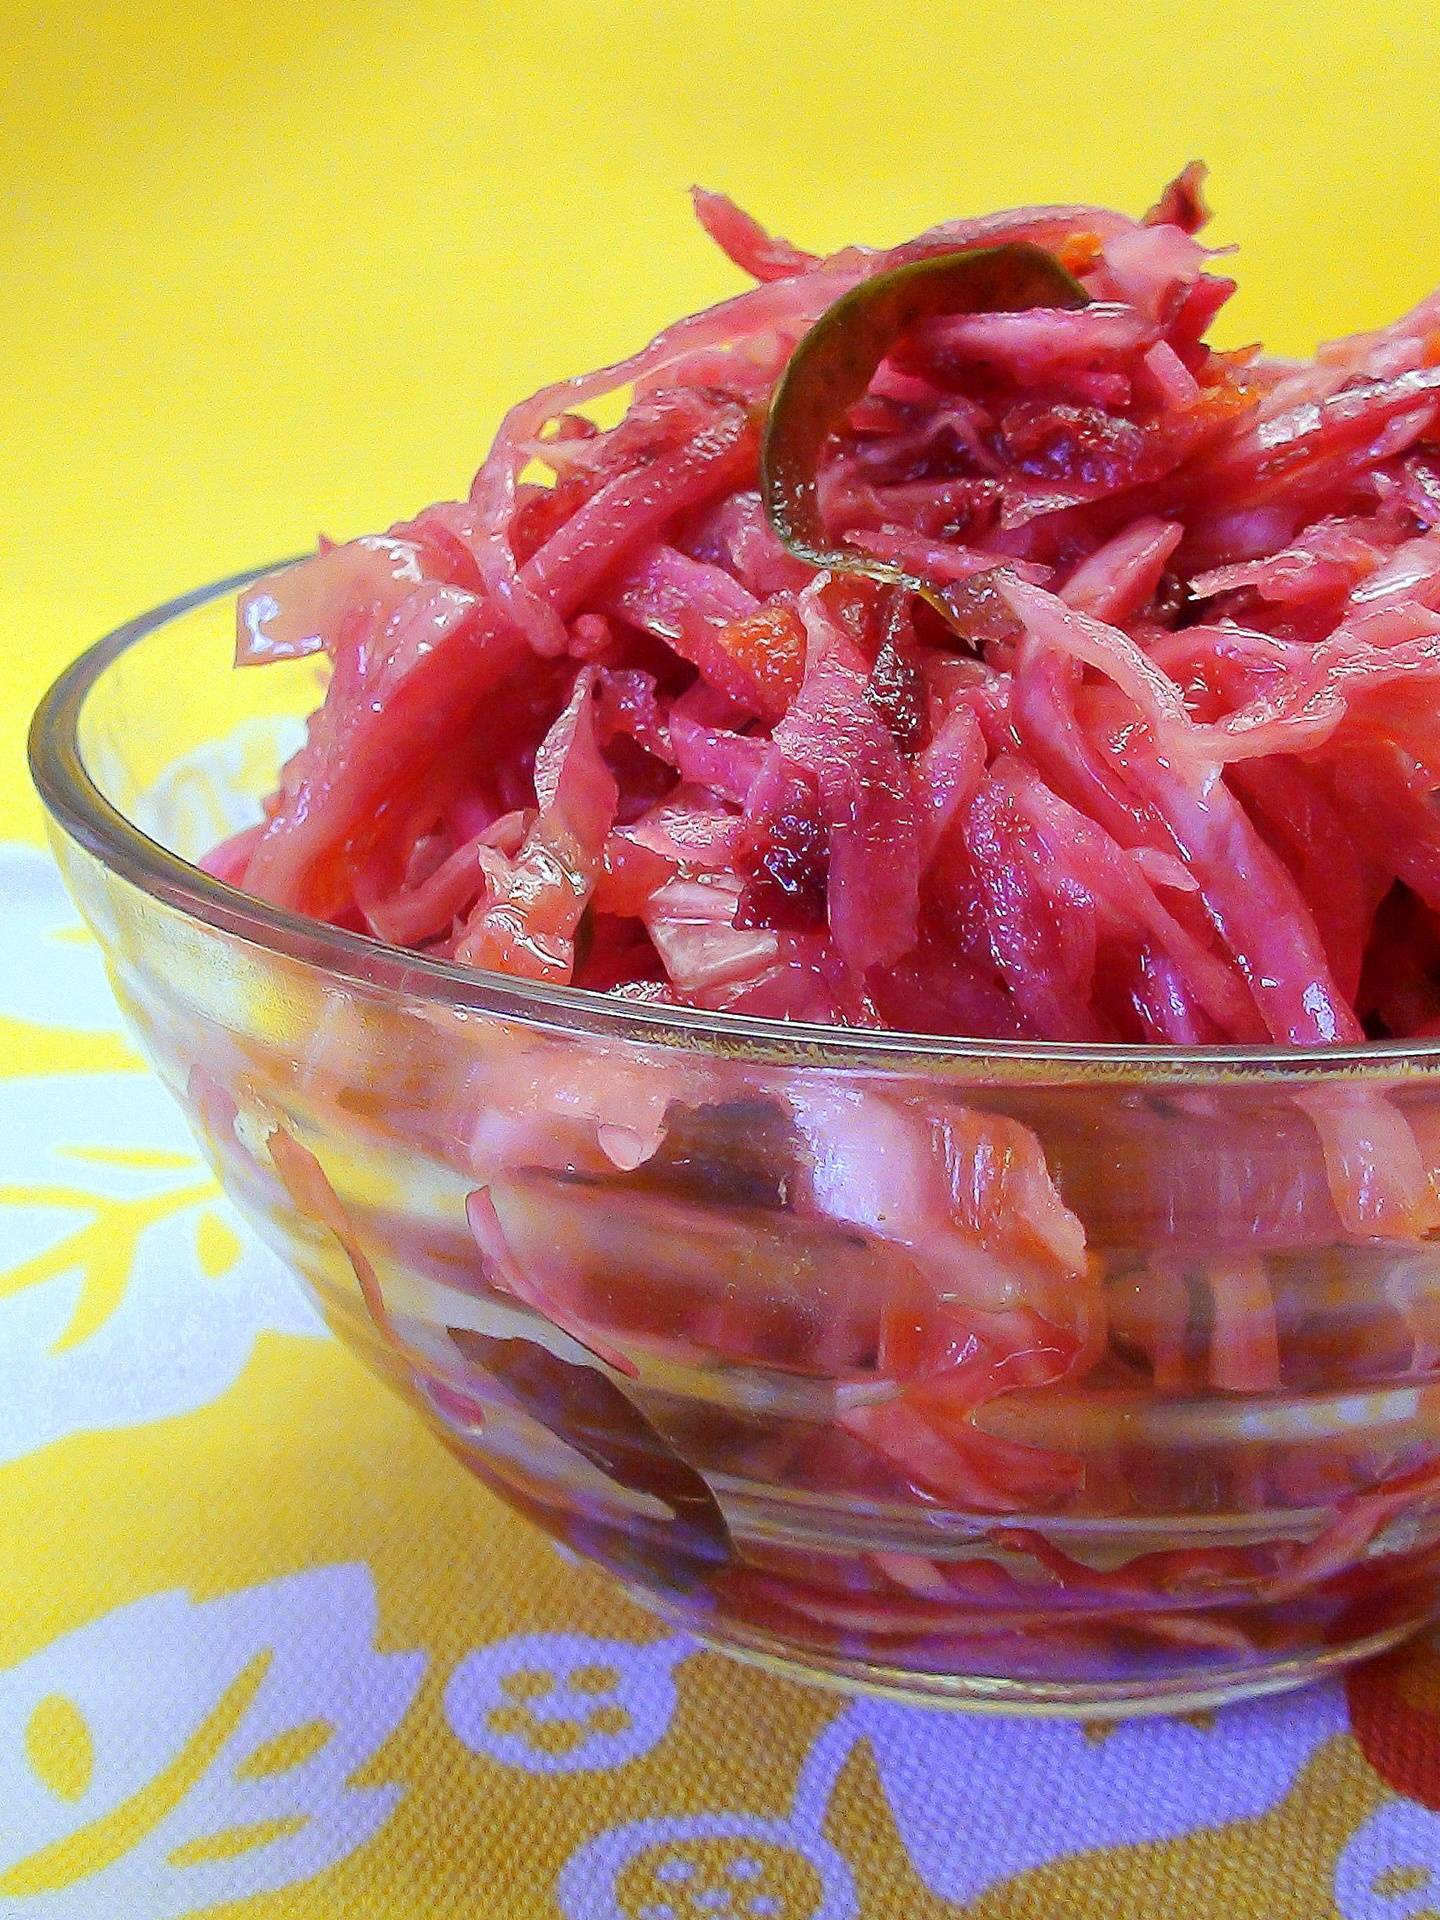 Рецепт приготовления маринованной капусты со свеклой - 7 пошаговых фото в рецепте